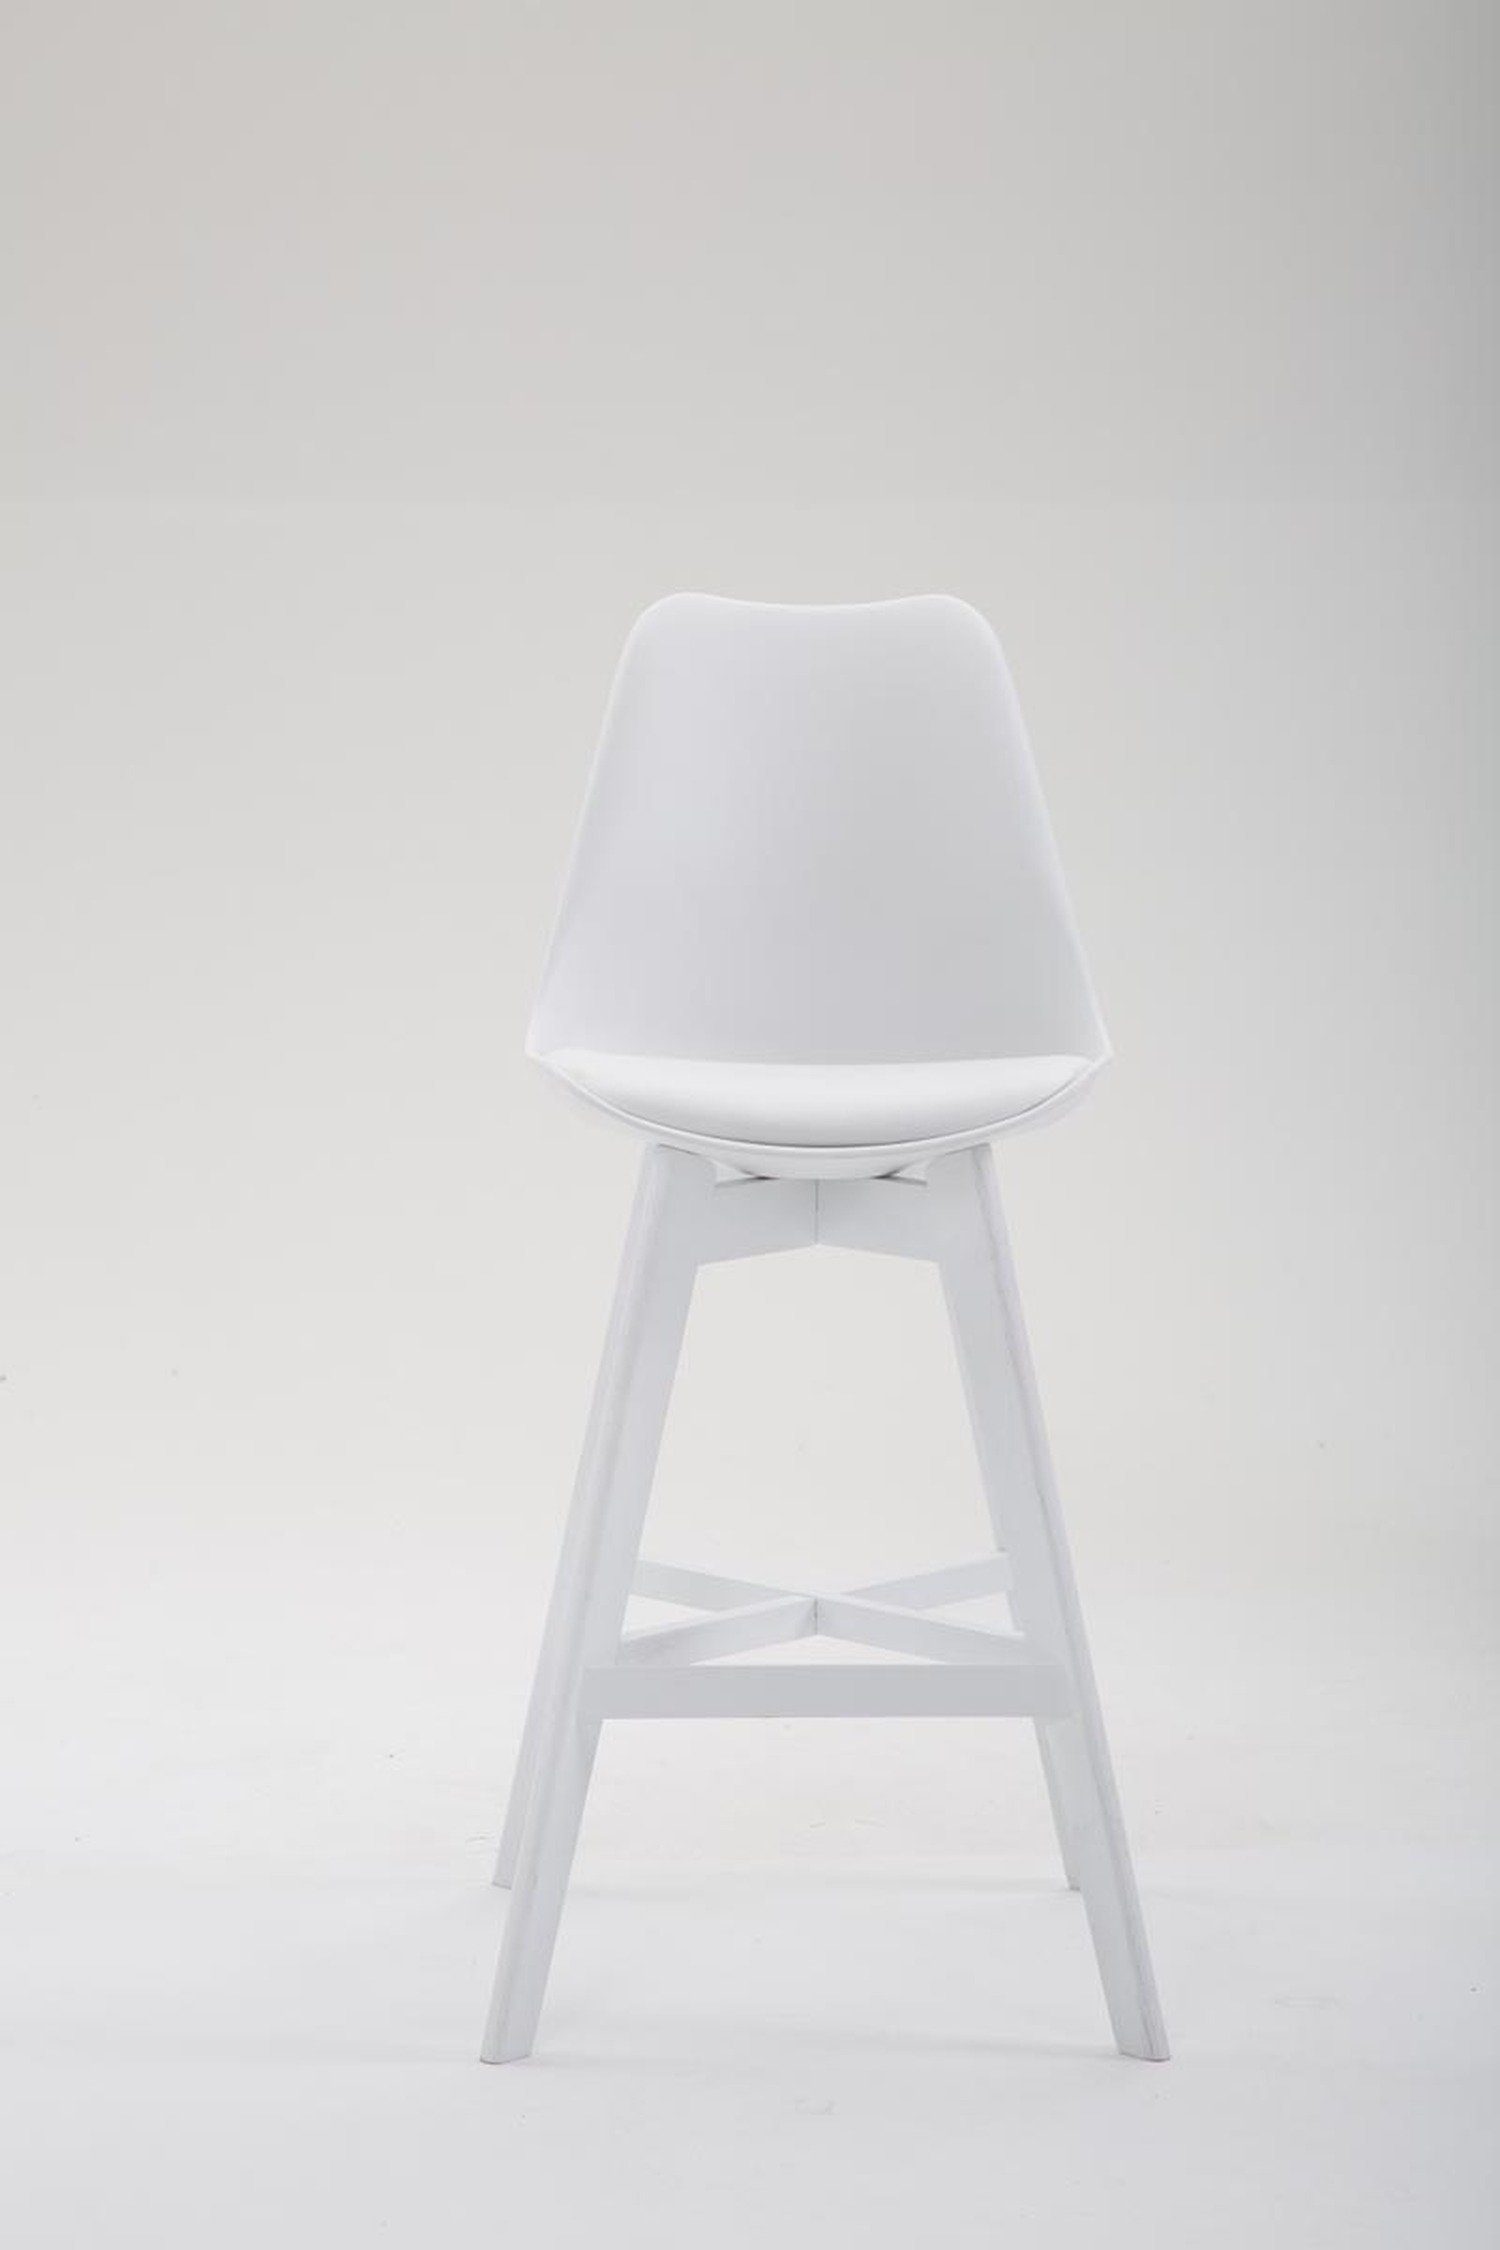 Sitzfläche: mit angenehmer bequemer Kunstleder Weiß - Hocker Rückenlehne Theke Gestell (Barstuhl & TPFLiving Holz 4-Fuß Weiß Fußstütze Barhocker und Canada für Küche),